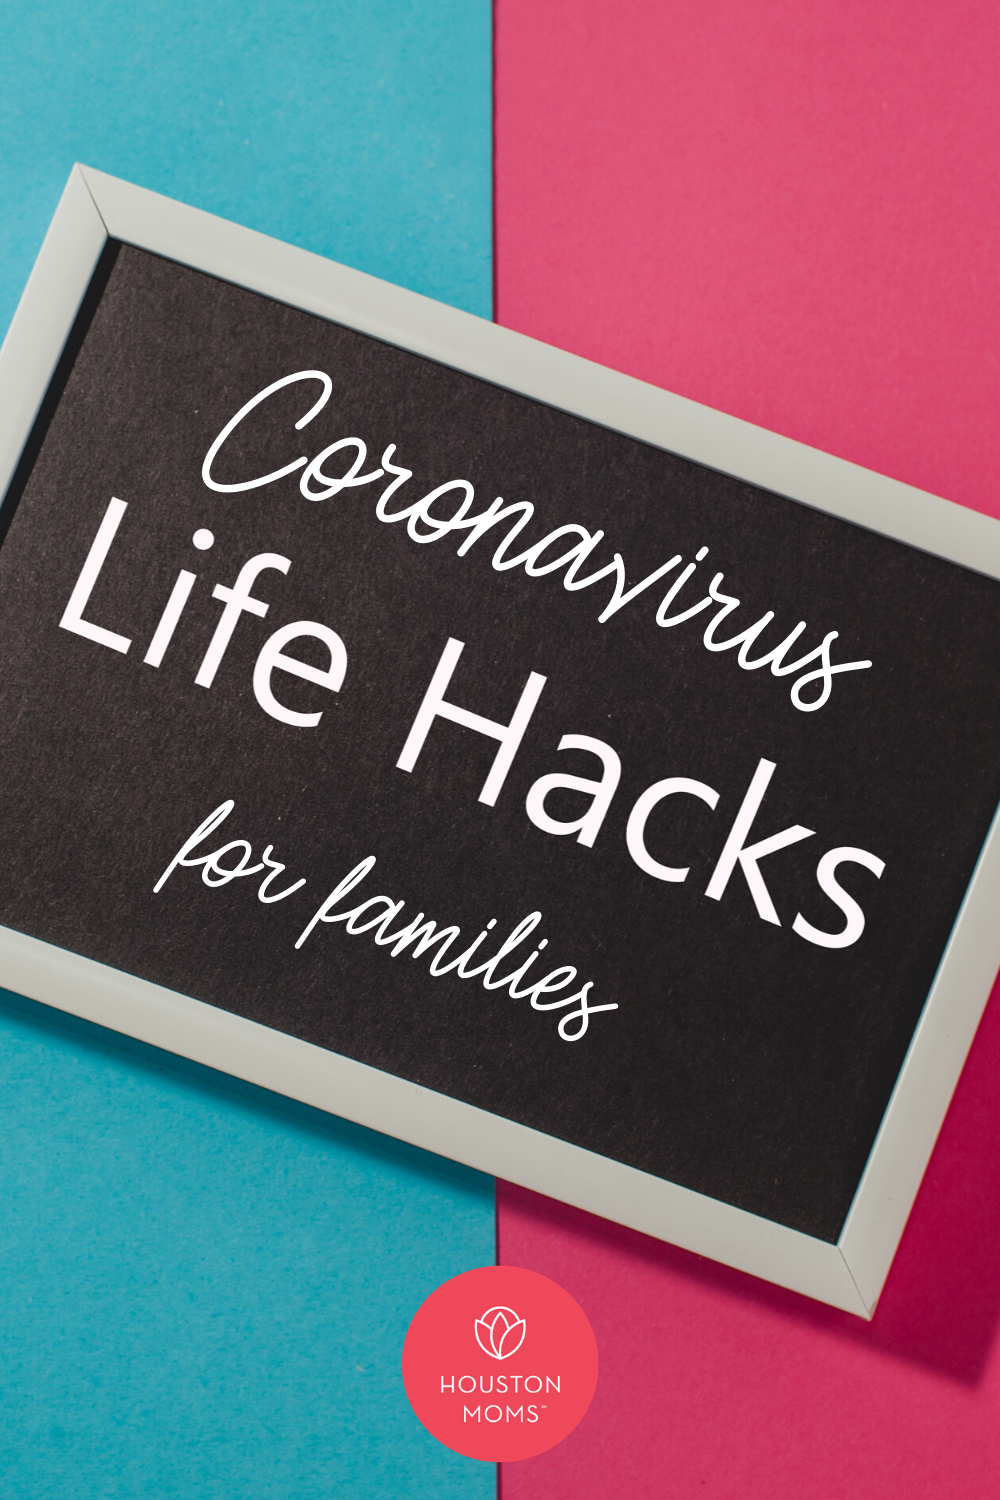 Houston Moms "Coronavirus Life Hacks for families" #houstonmoms #houstonmomsblog #momsaroundhouston